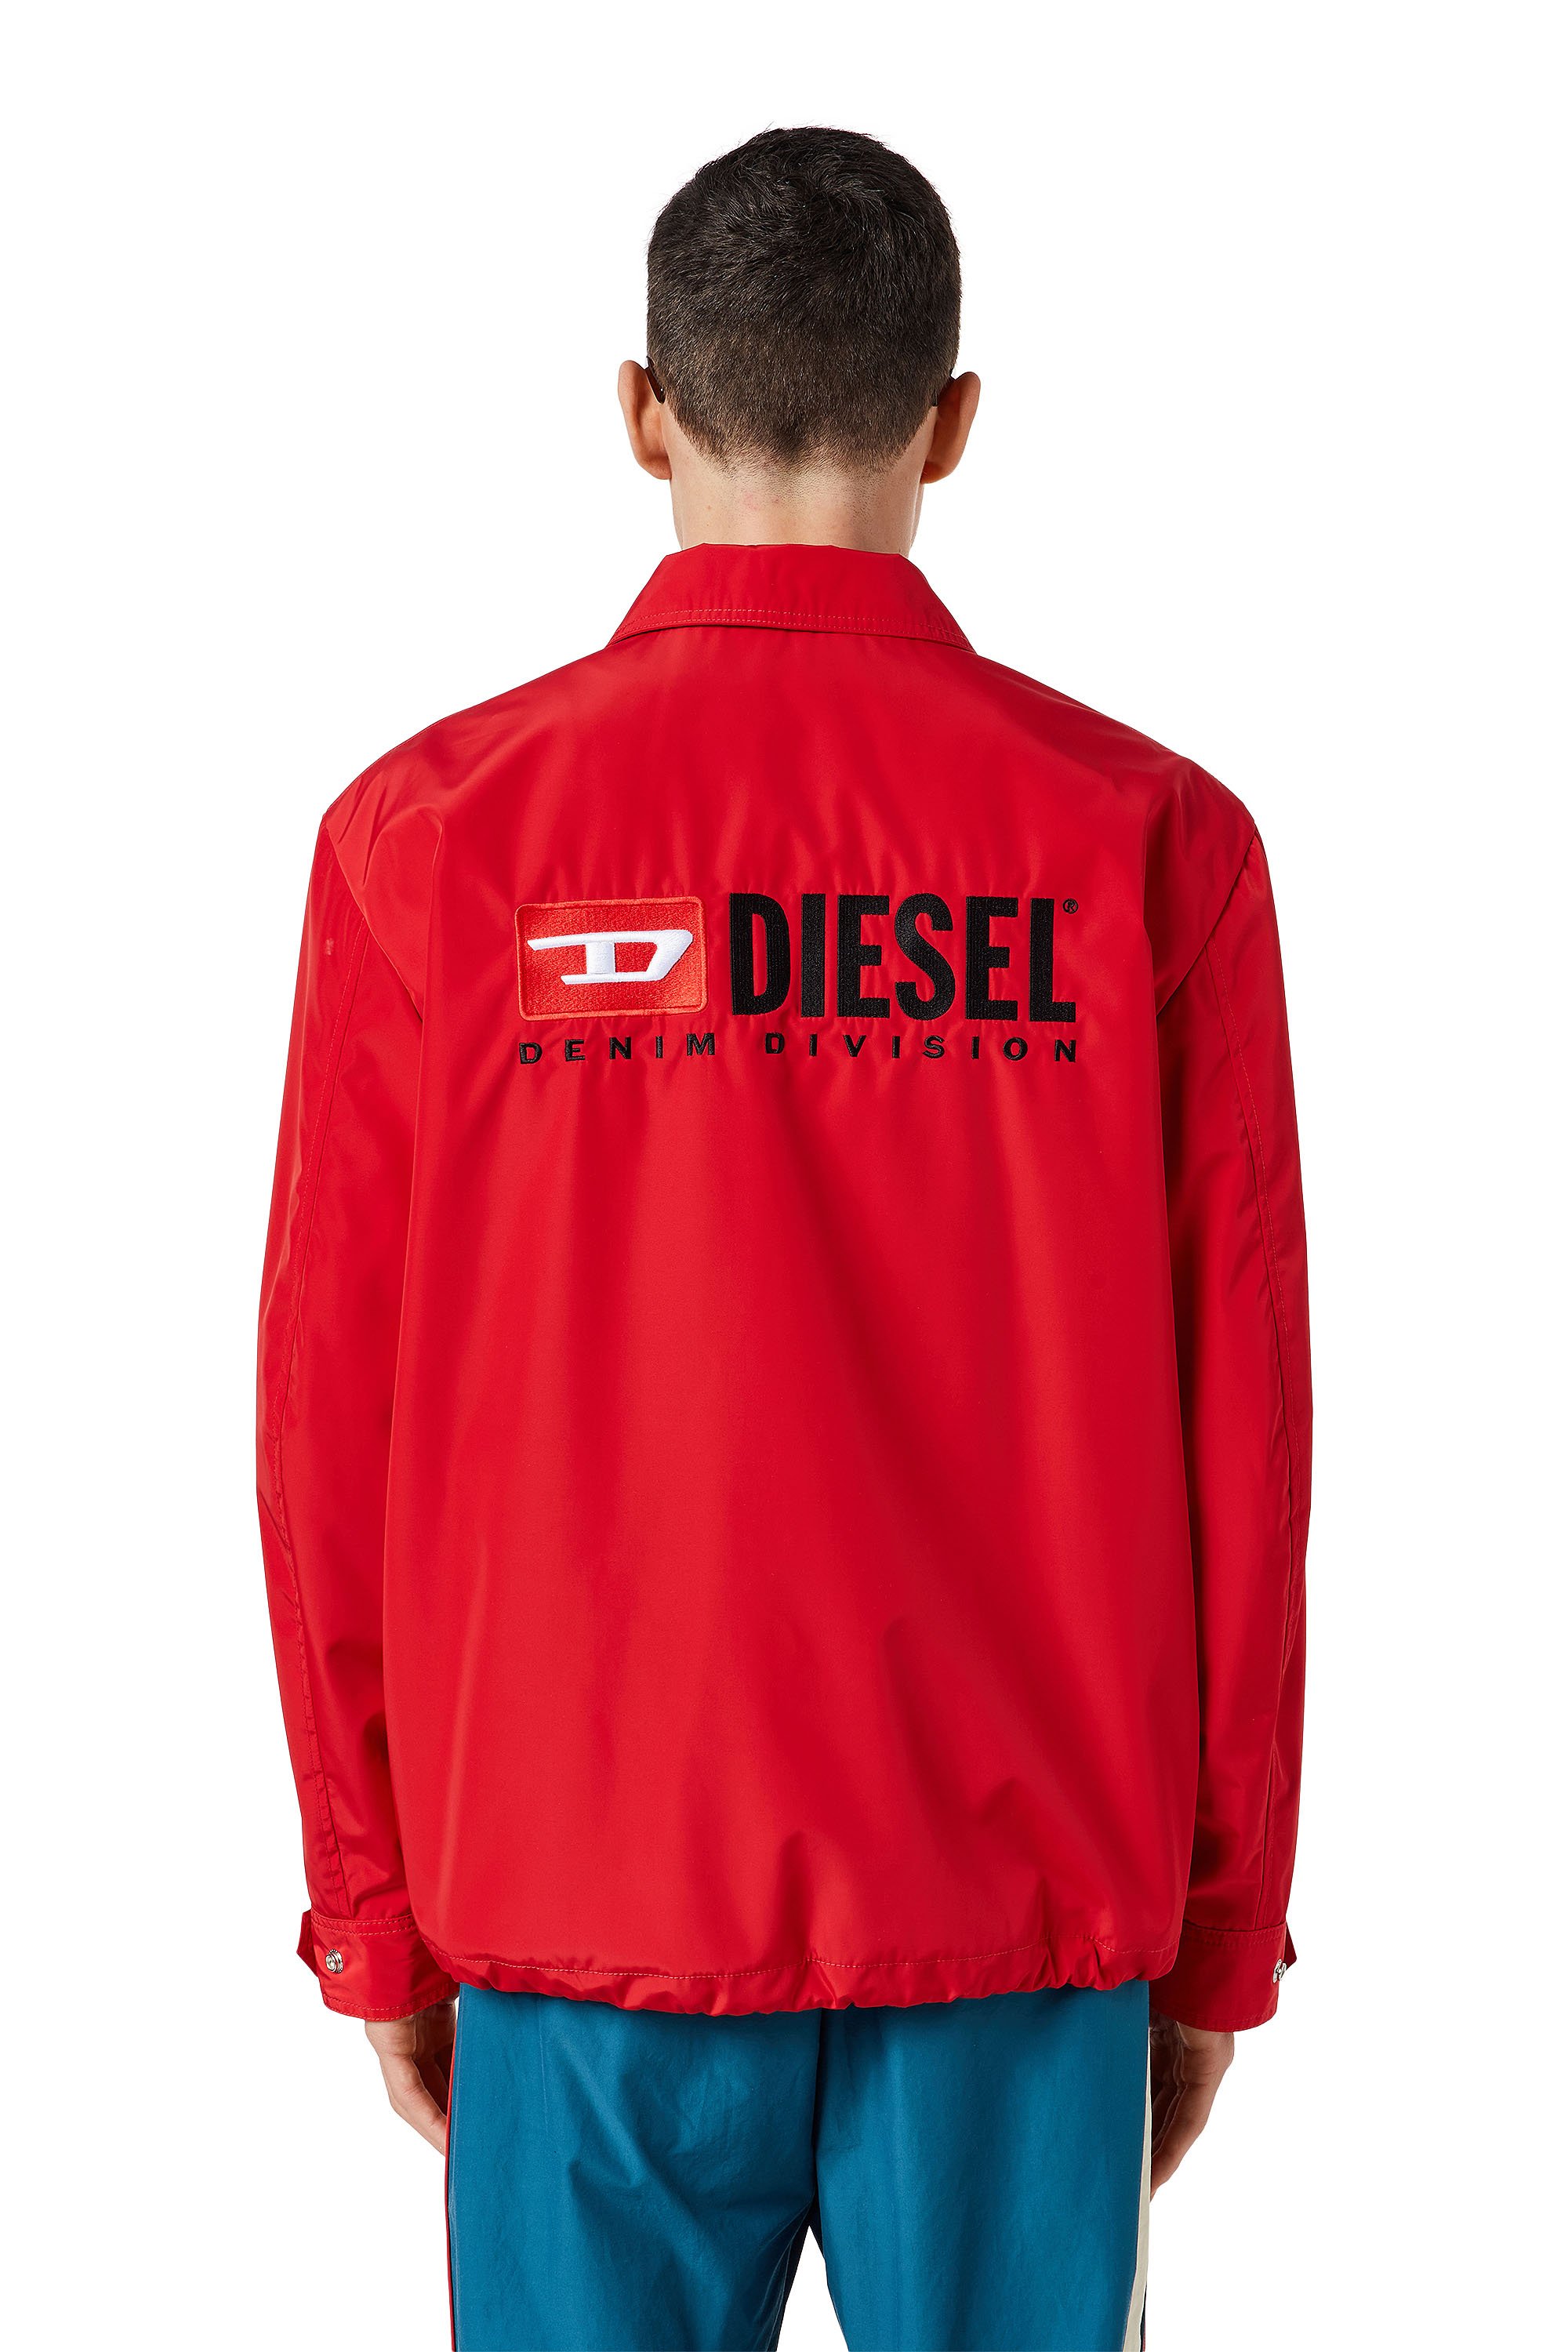 Diesel - J-COAL-NP, Red - Image 2